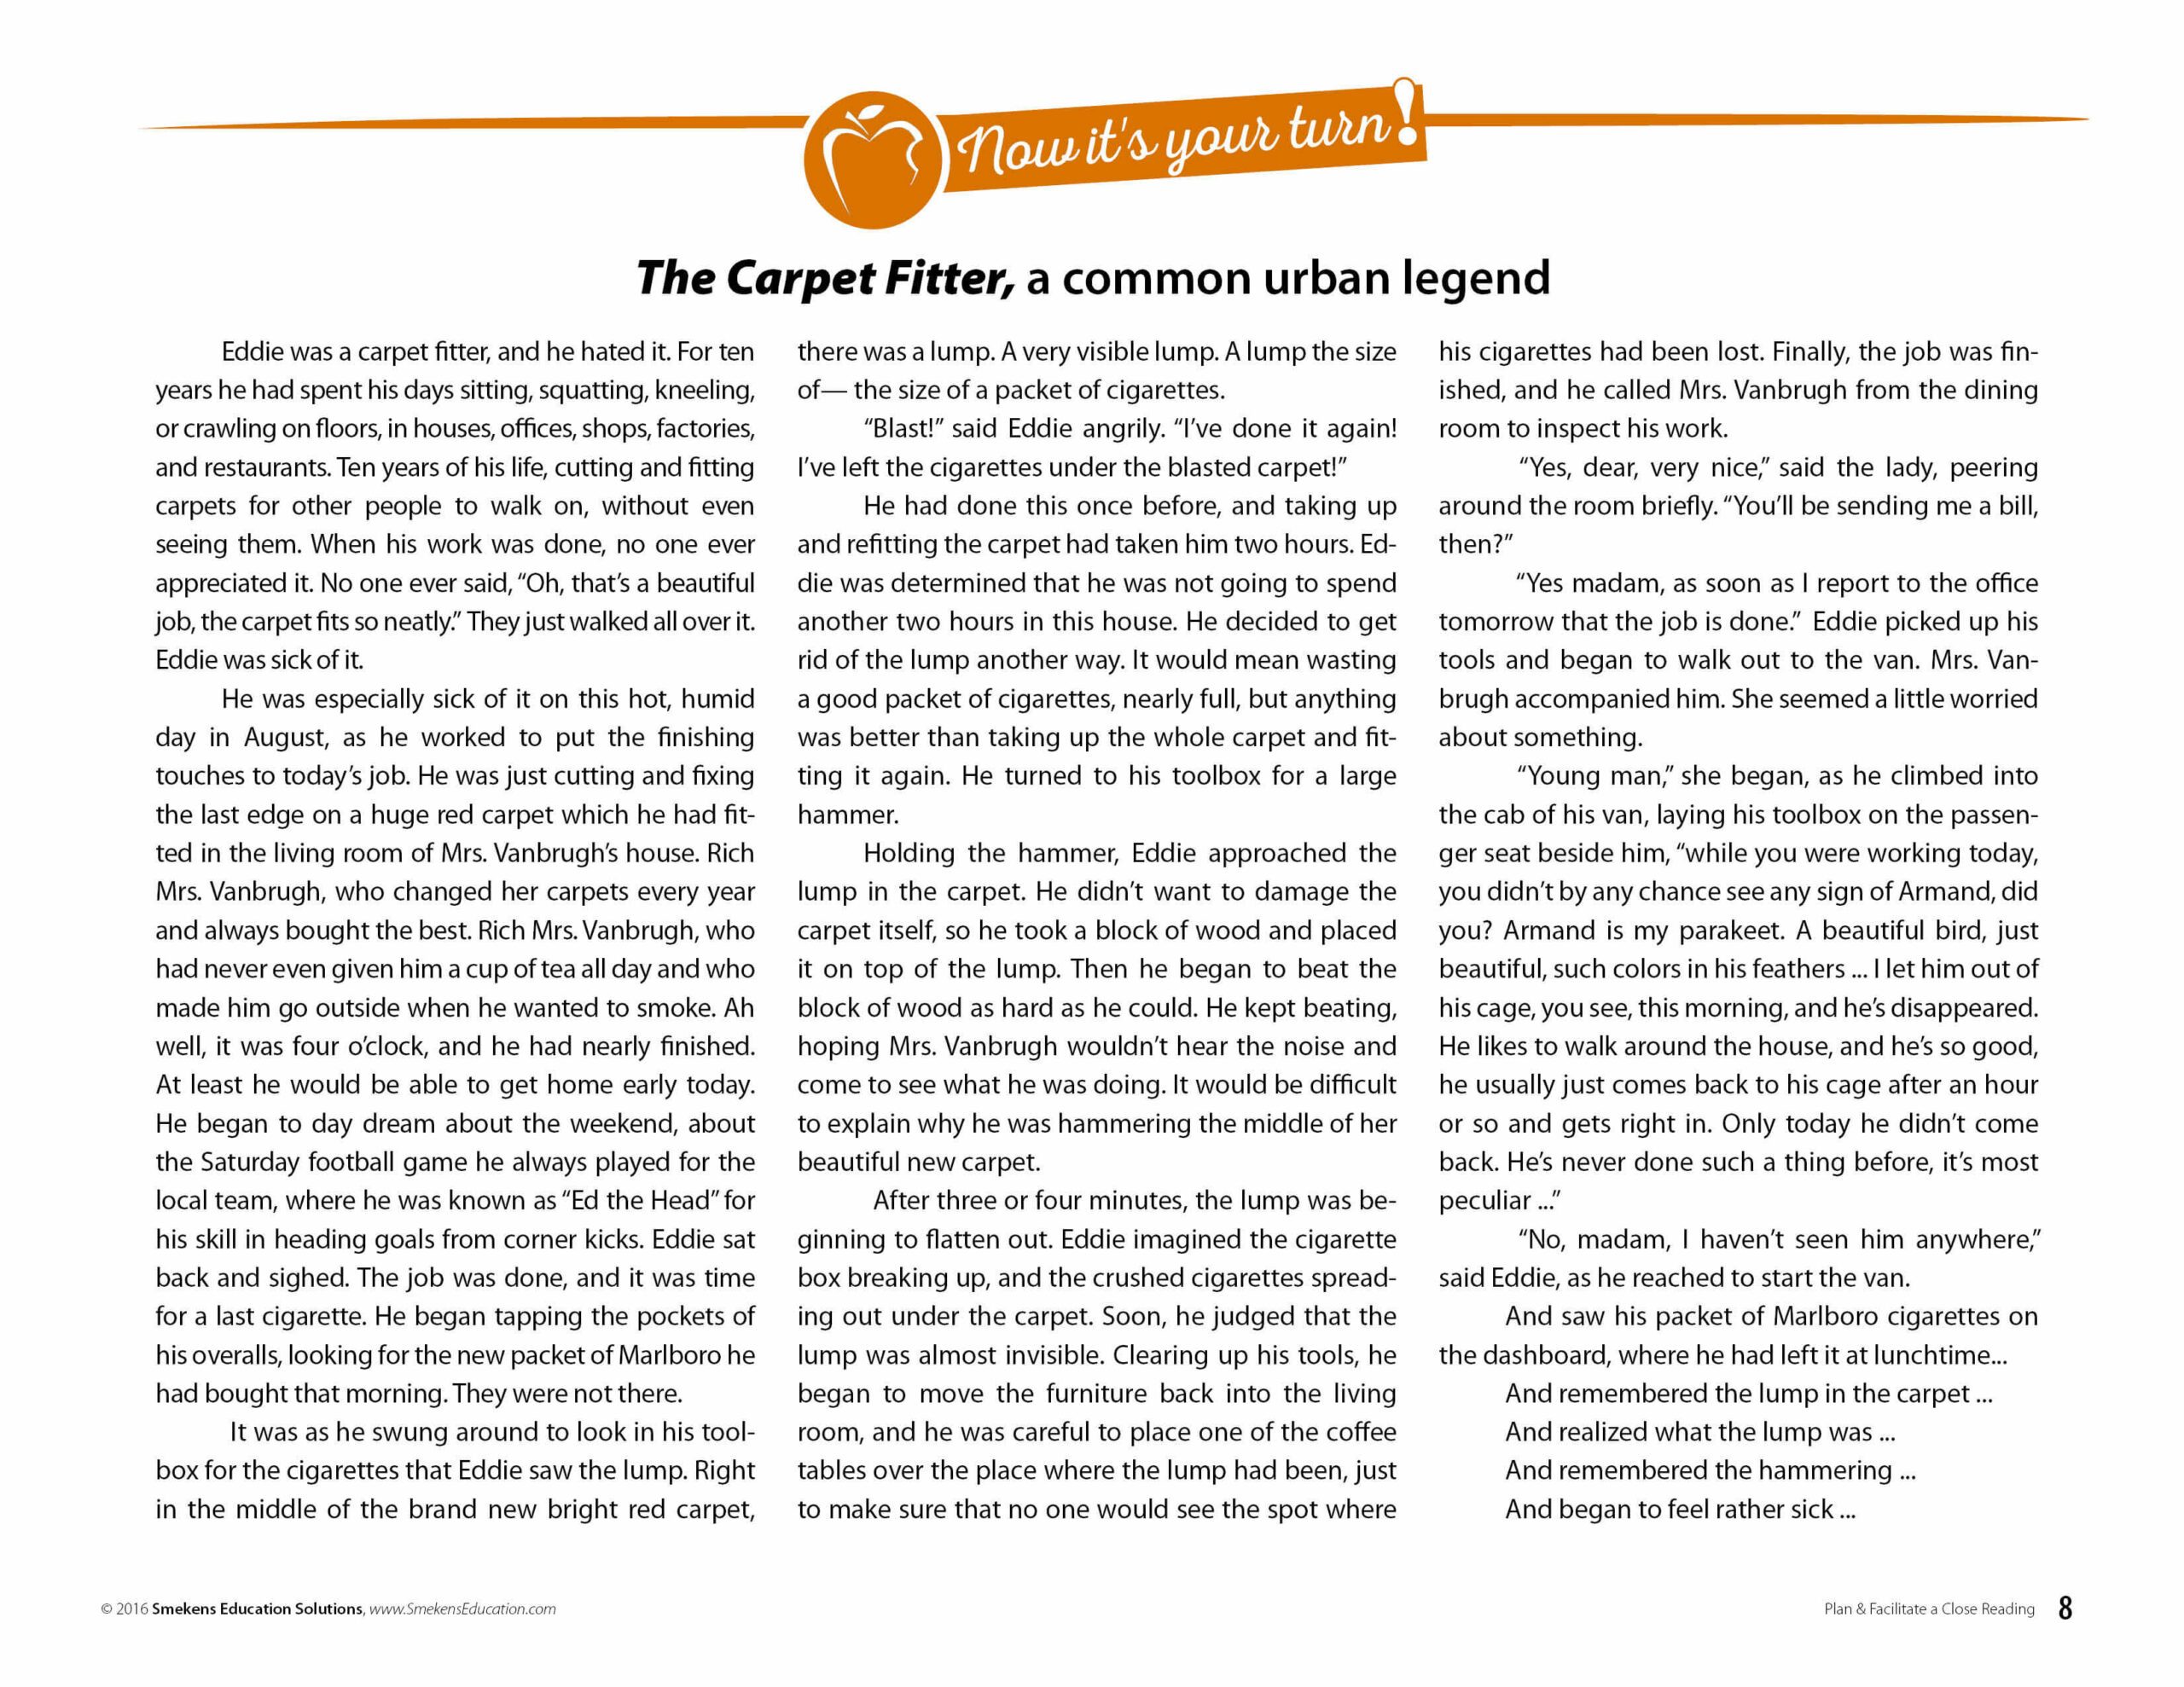 "The Carpet Fitter" - an urban legend